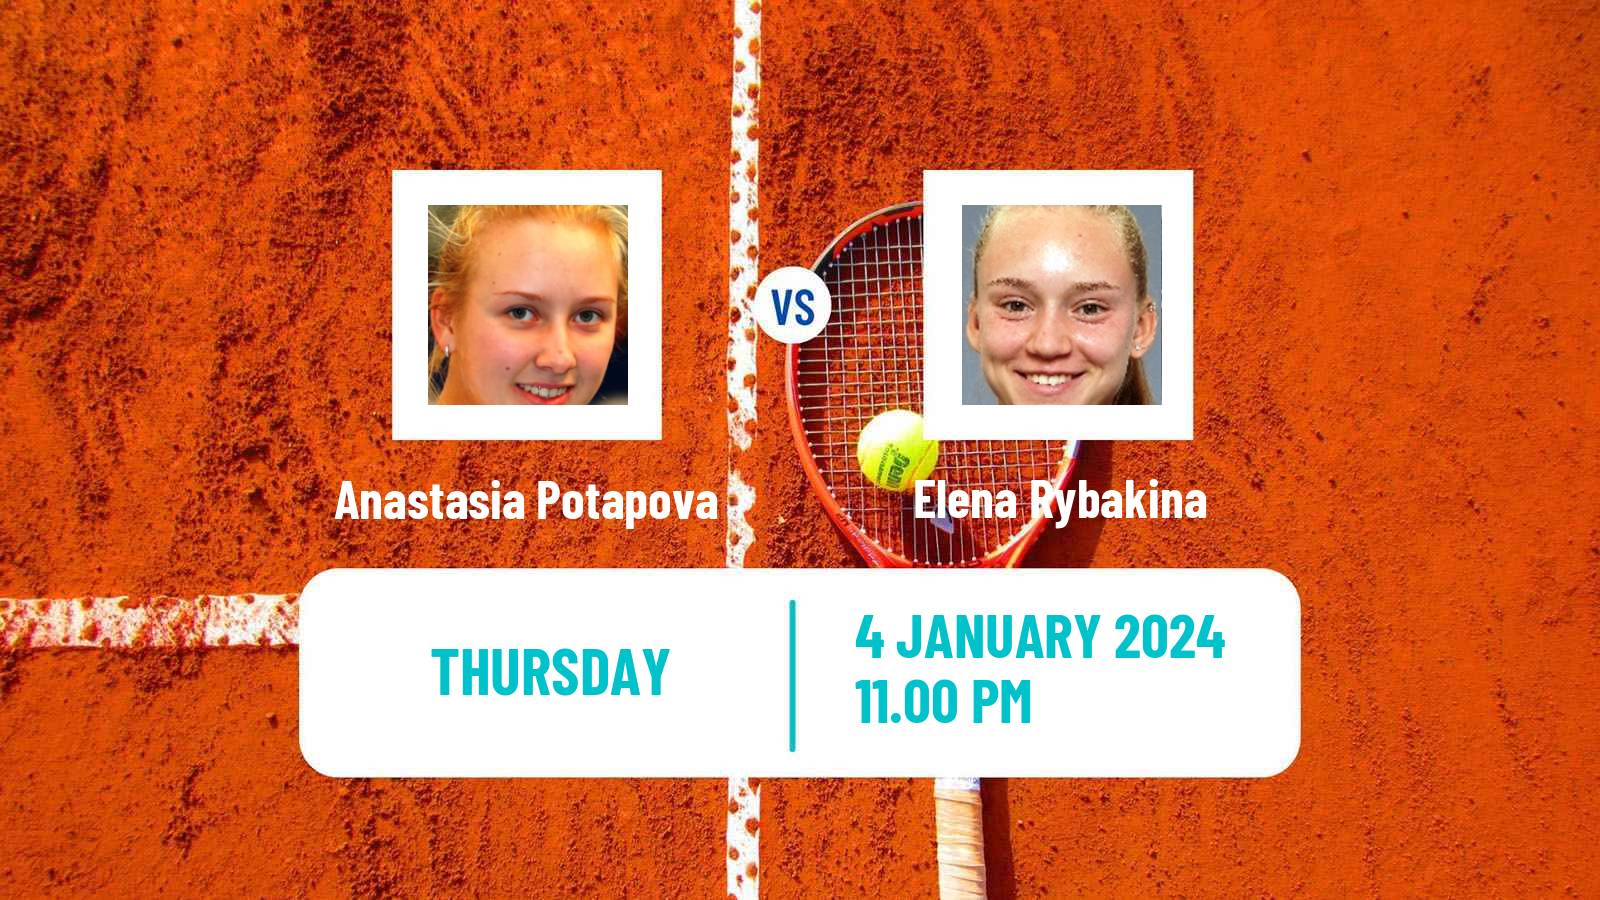 Tennis WTA Brisbane Anastasia Potapova - Elena Rybakina